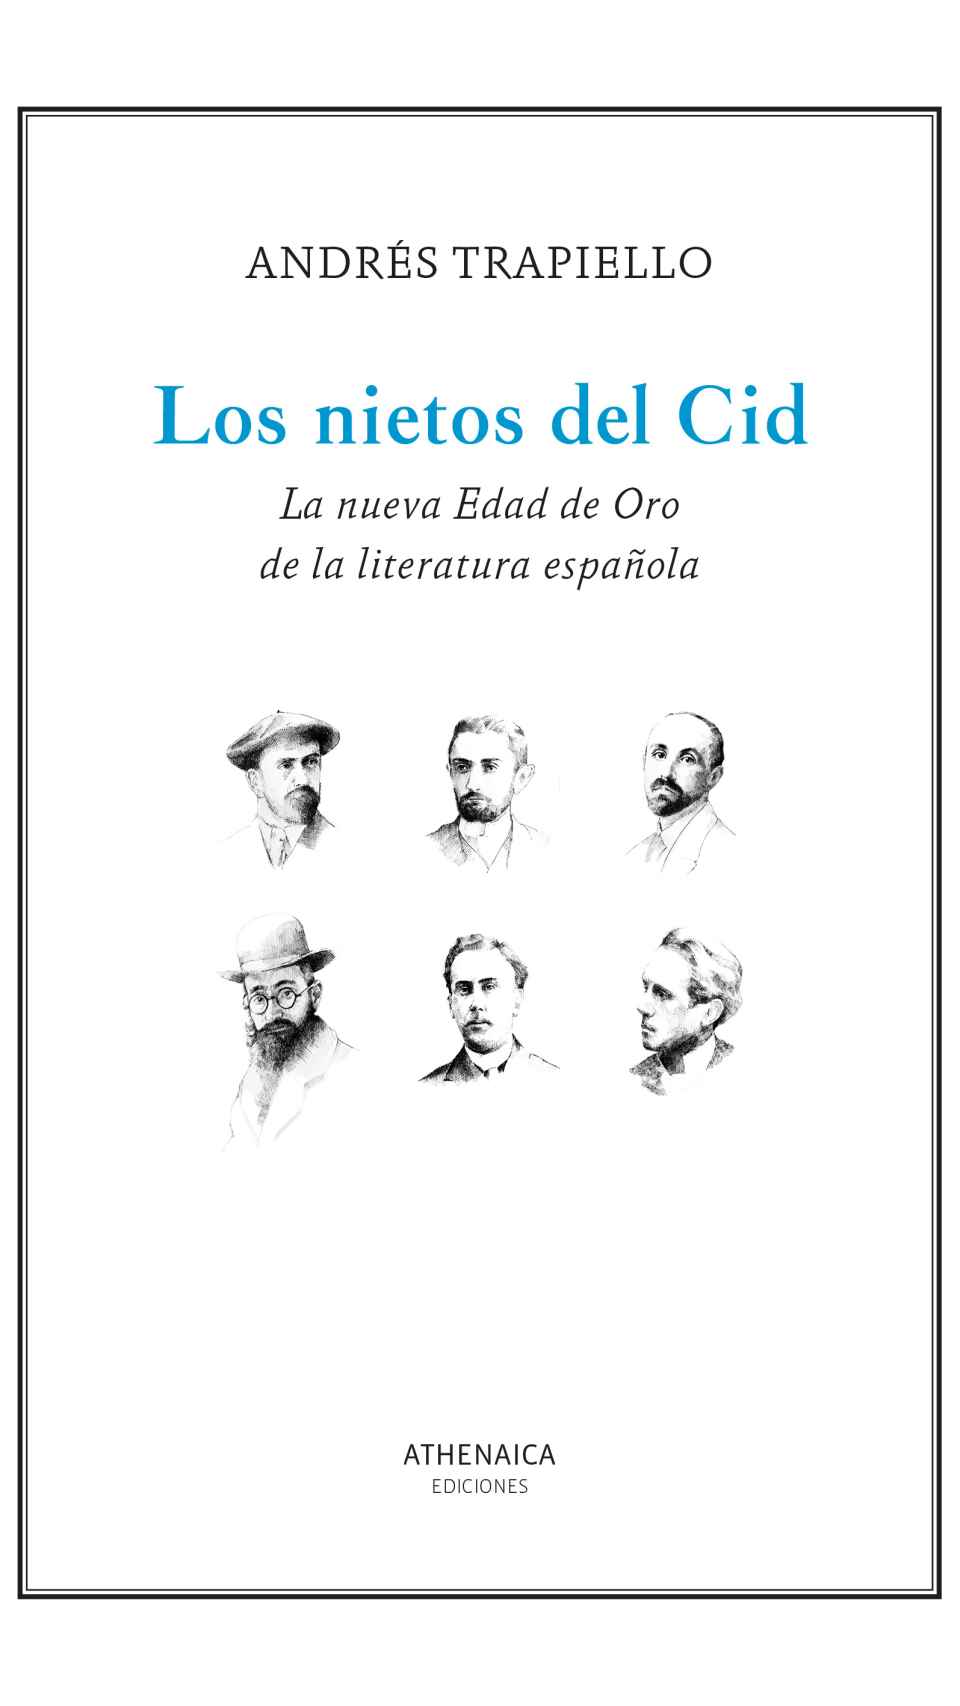 'Los nietos del Cid', un libro de Andrés Trapiello